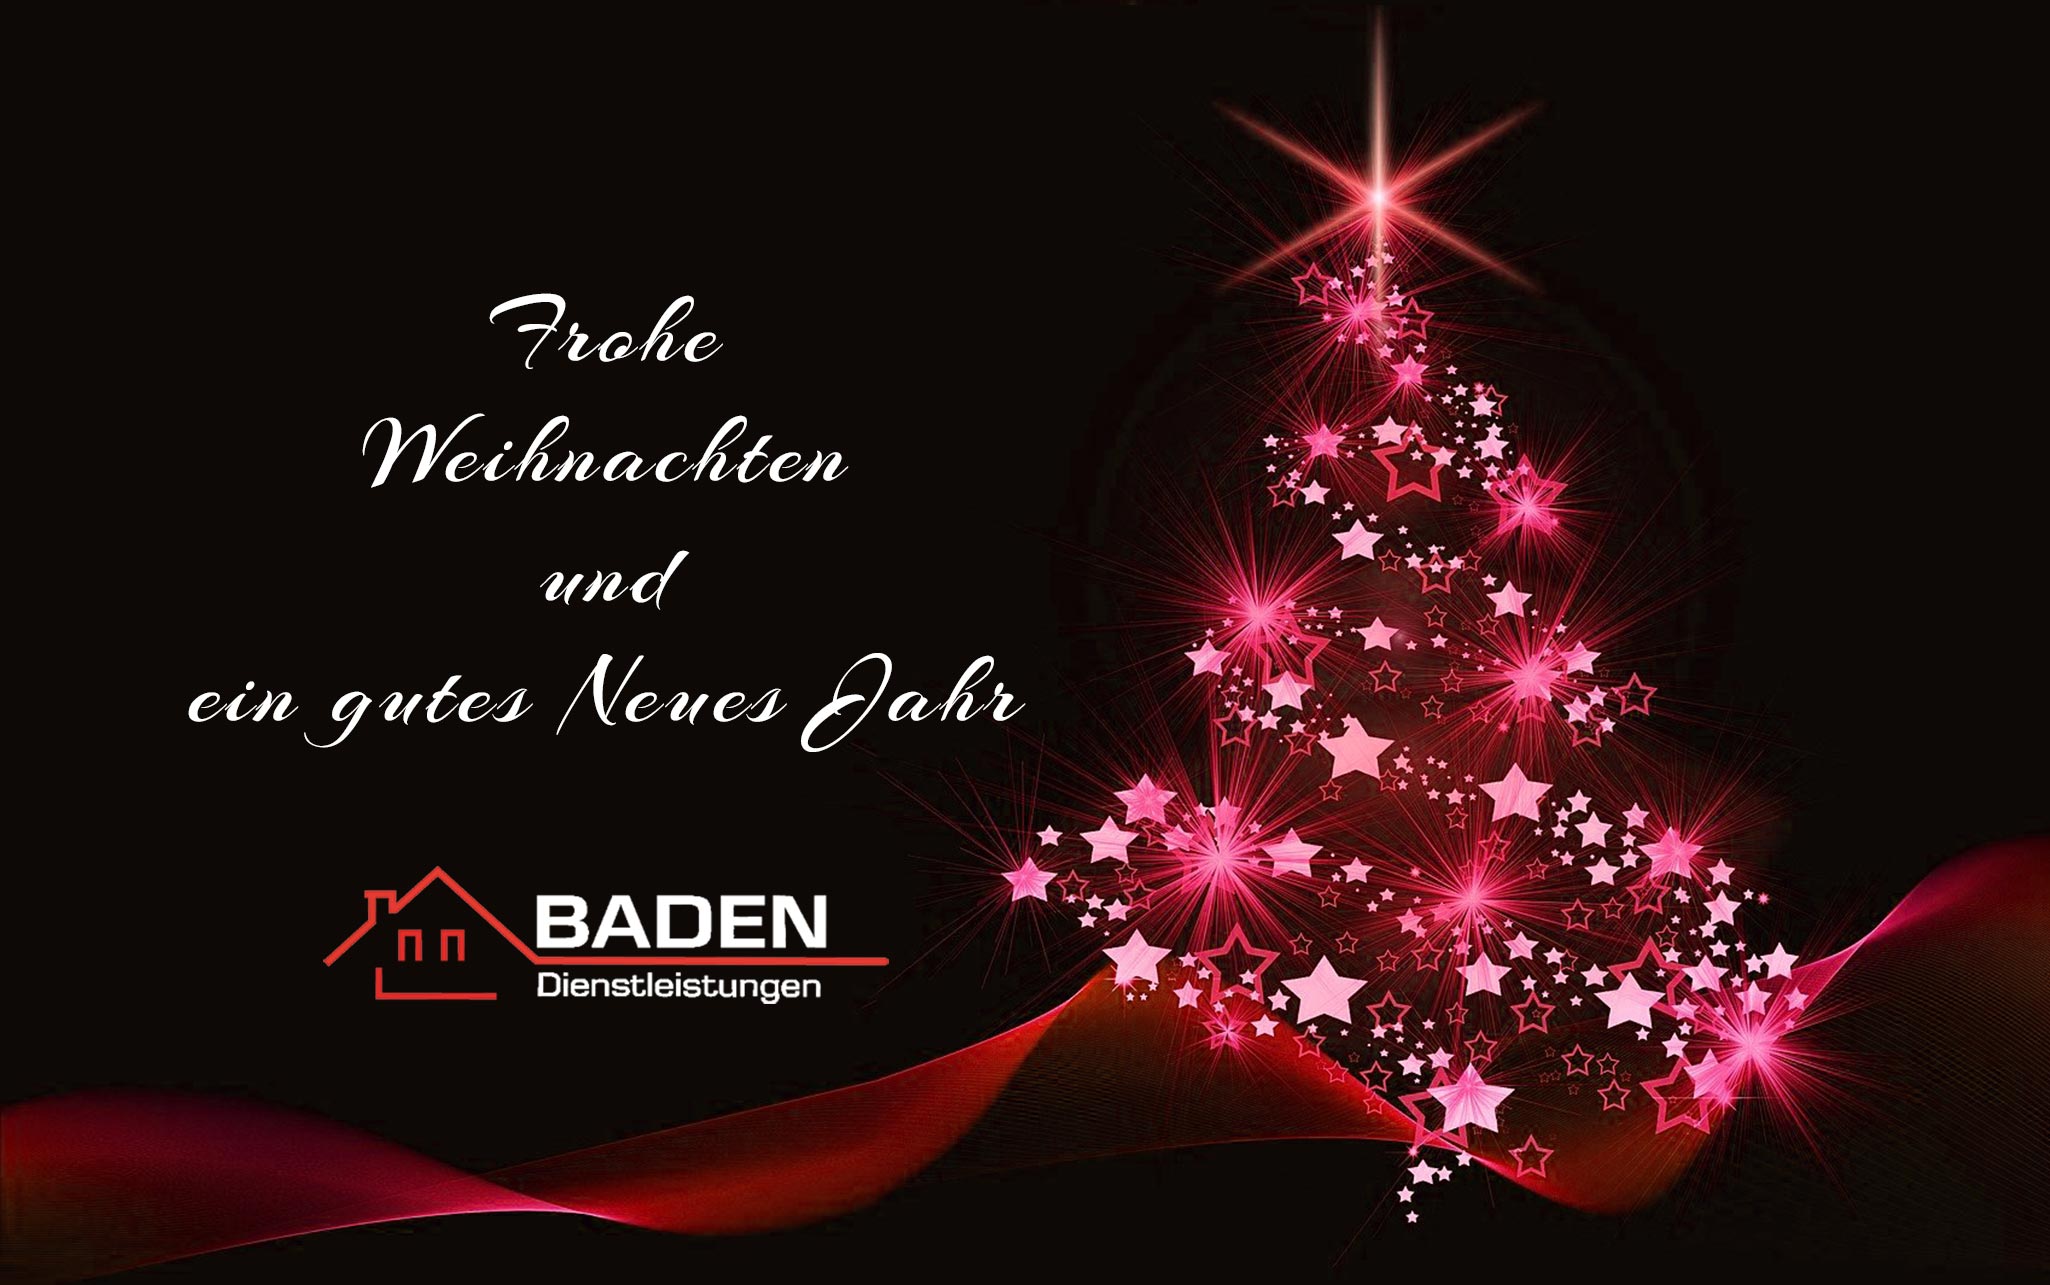 Weihnachtskarte mit Weihnachtsbaum, Weihnachtsgrüße und Logo von Baden Dienstleistungen